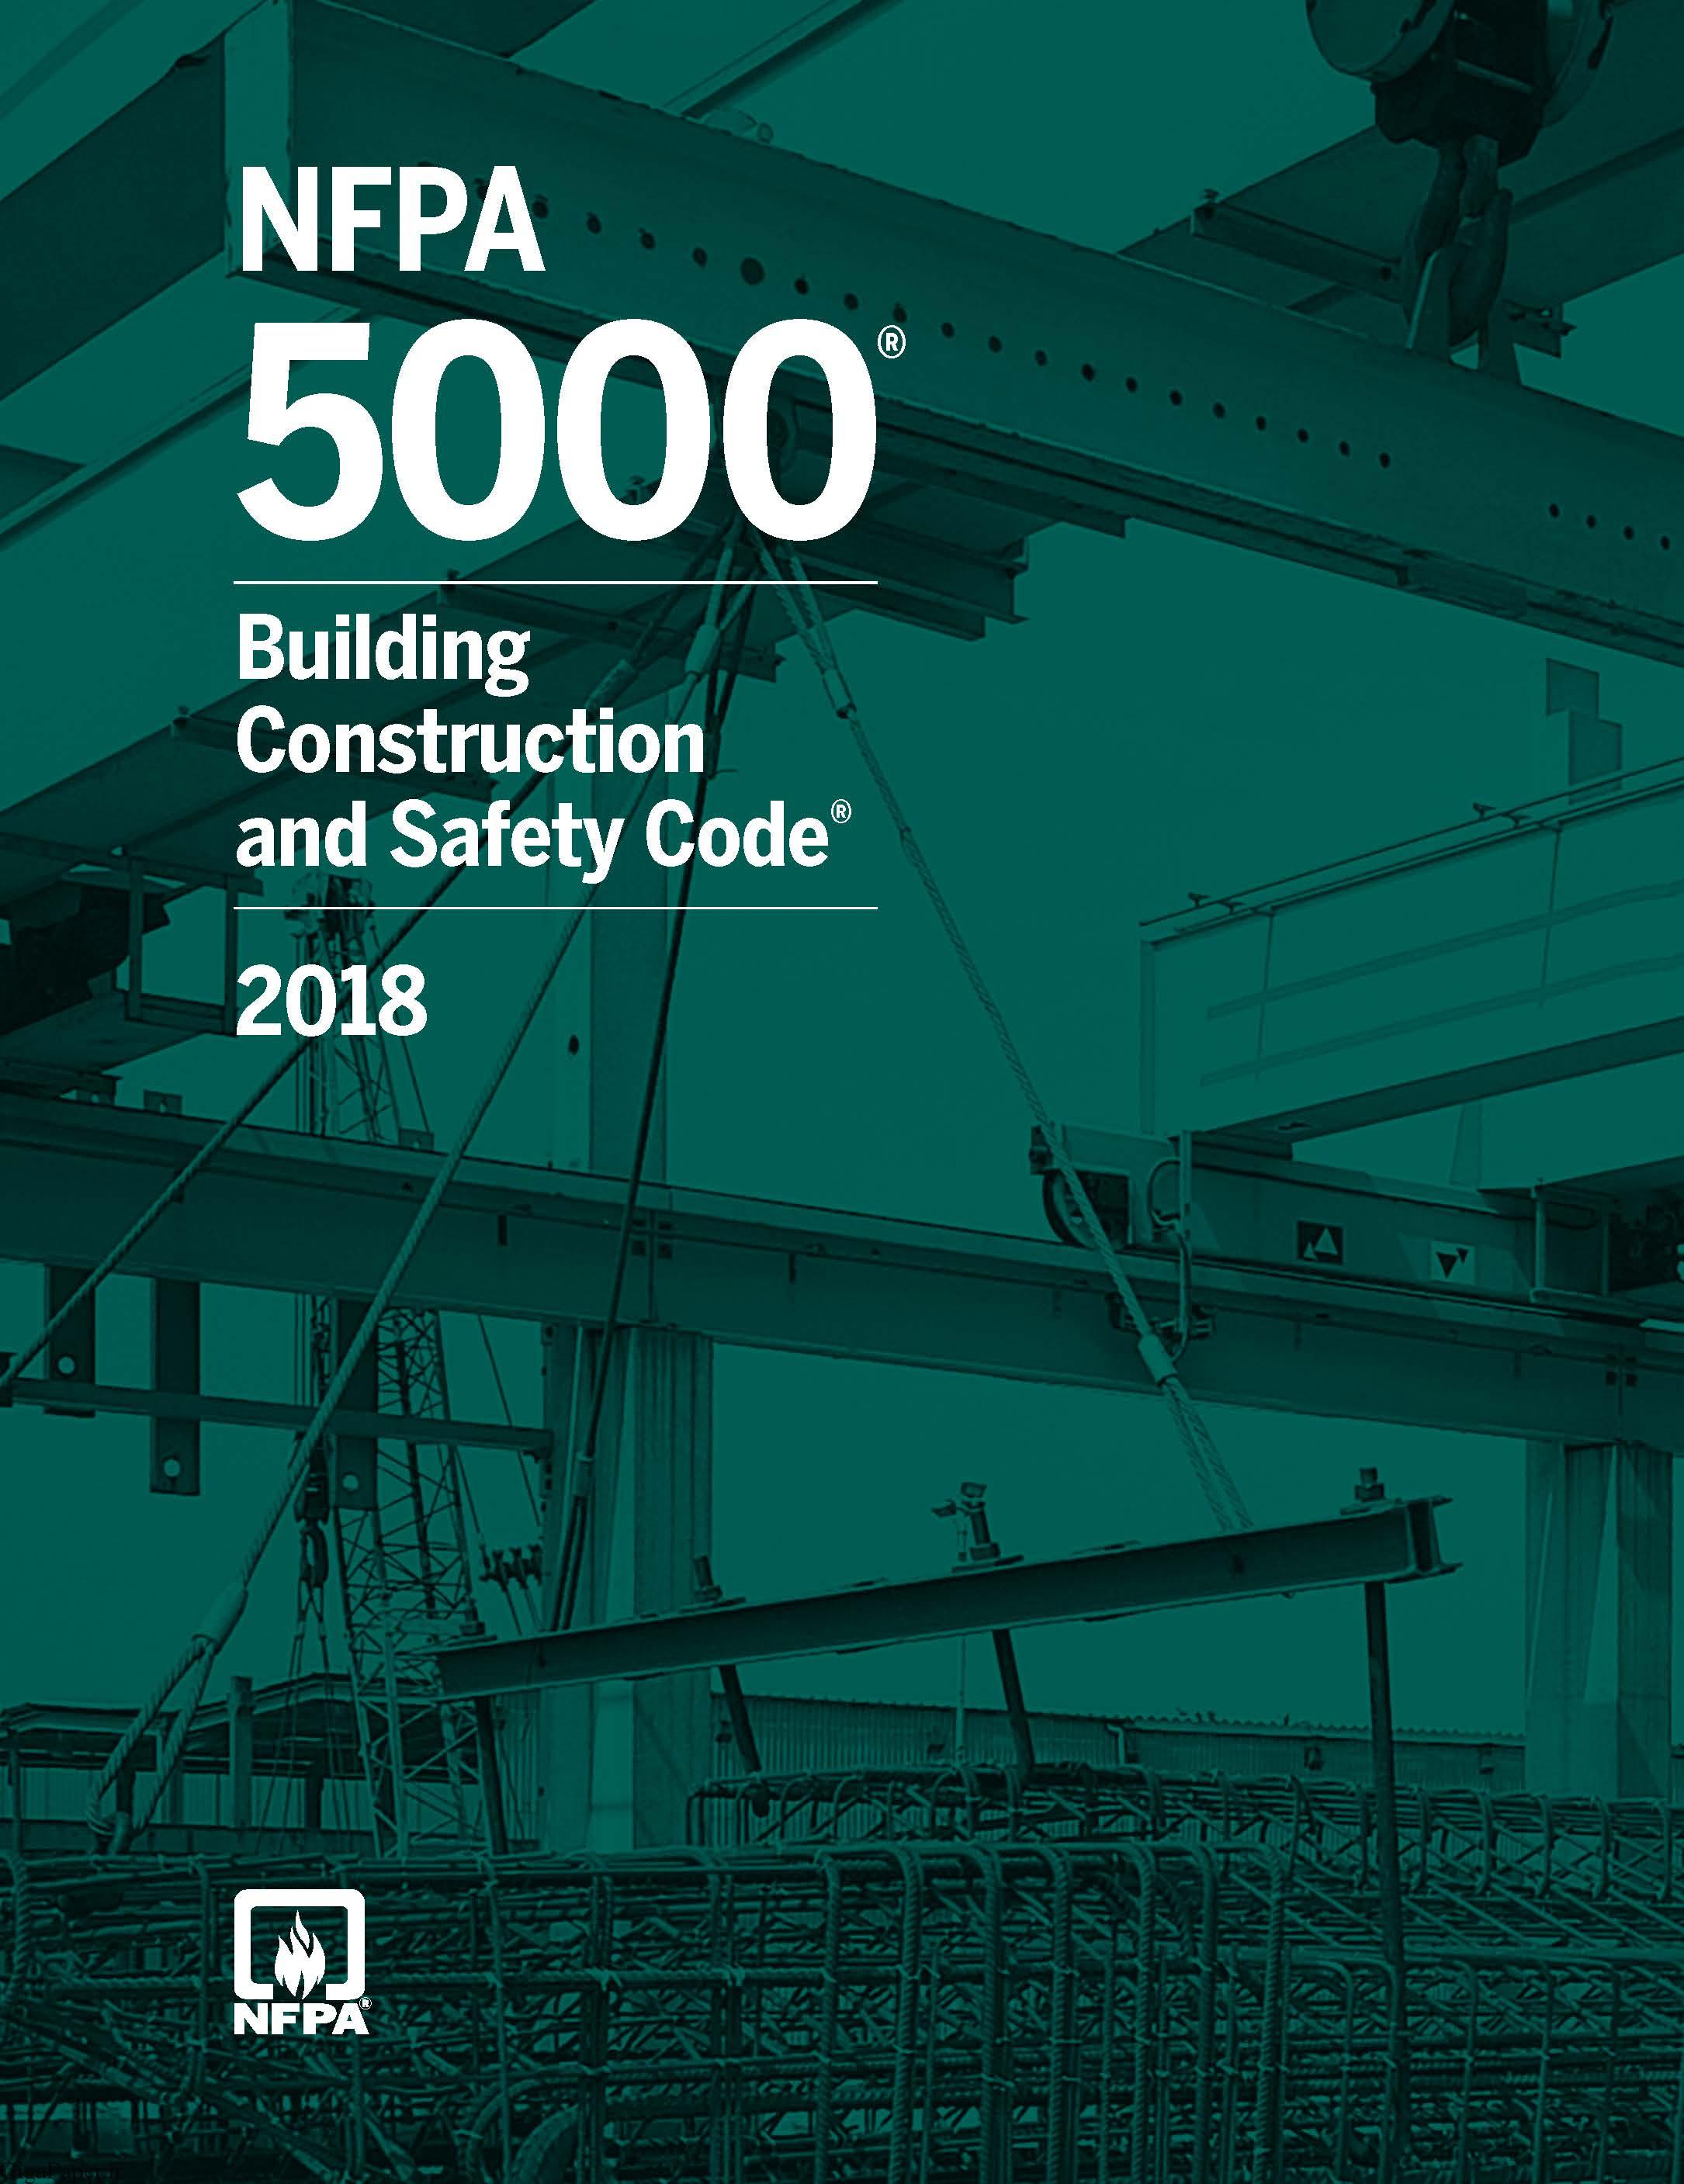 خرید استاندارد NFPA 5000 دستورالعمل ایمنی سازه ساختمان ها، سال 2018 Building Construction and Safety Code, 2018 Edition استاندارد حفاظت از حریق سازمان NFPA